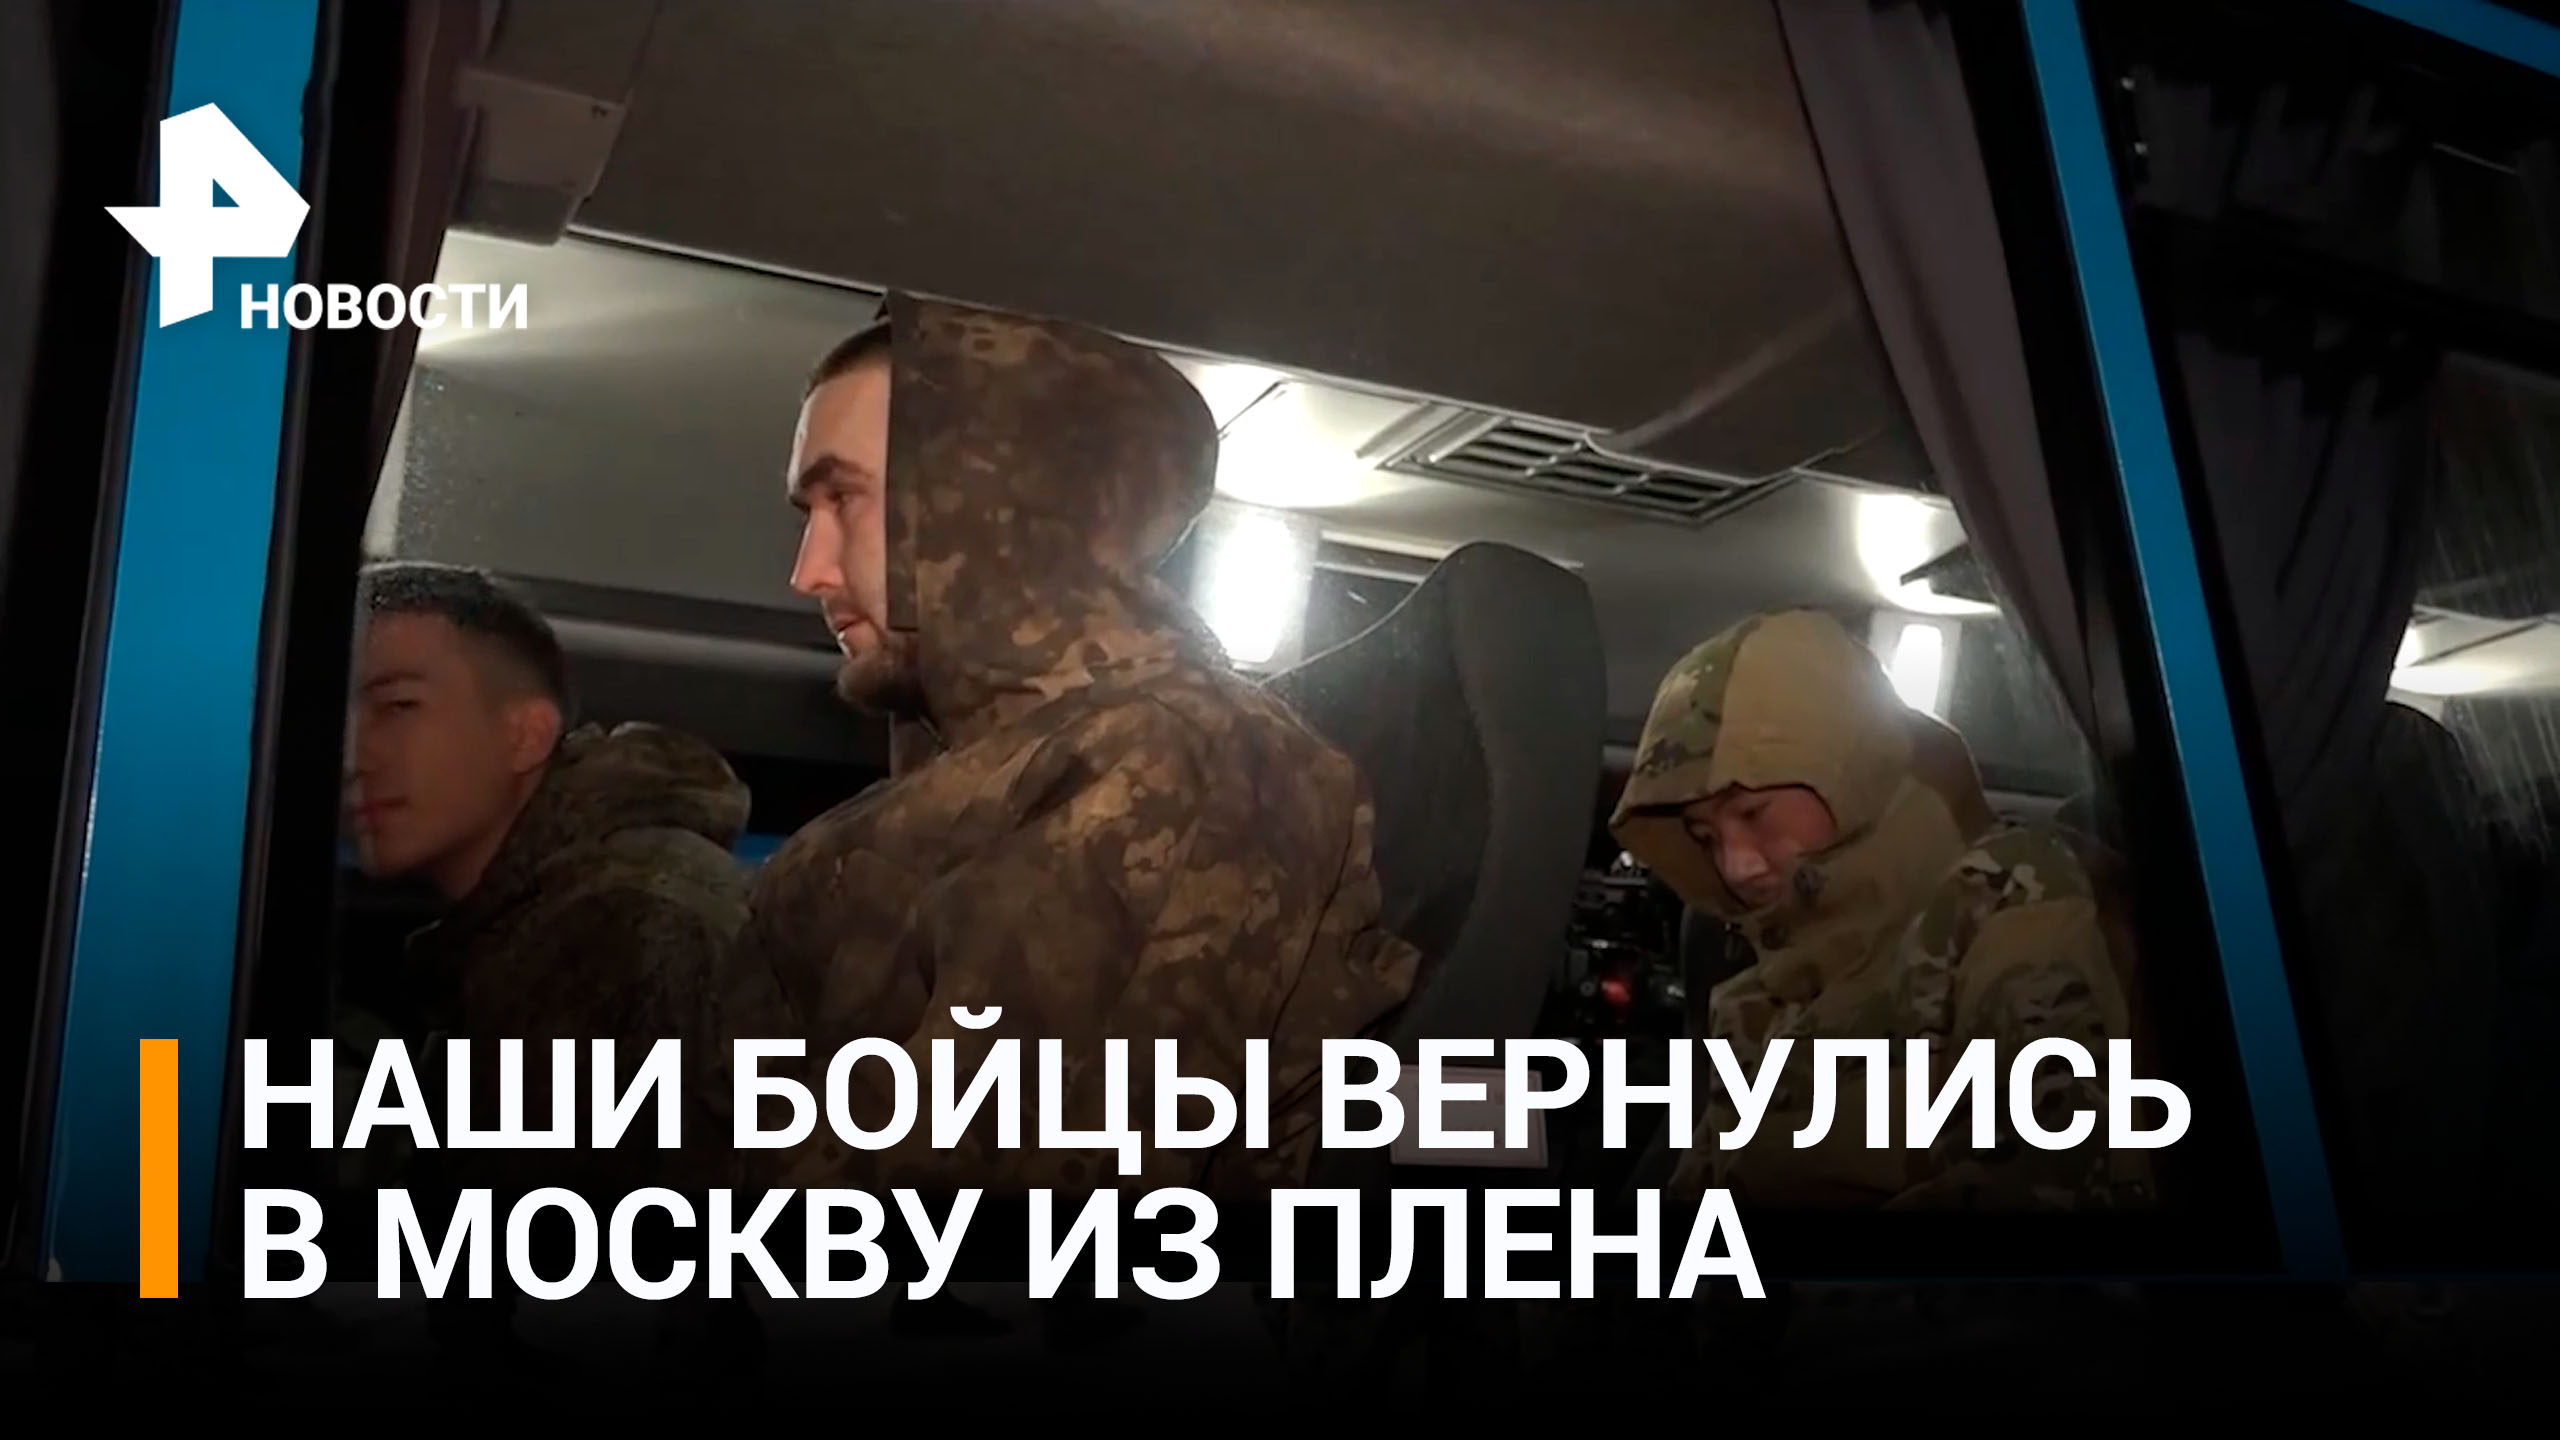 "Били током, киянкой по голове": военнослужащие РФ, вернувшиеся из плена, - о зверствах ВСУ / РЕН